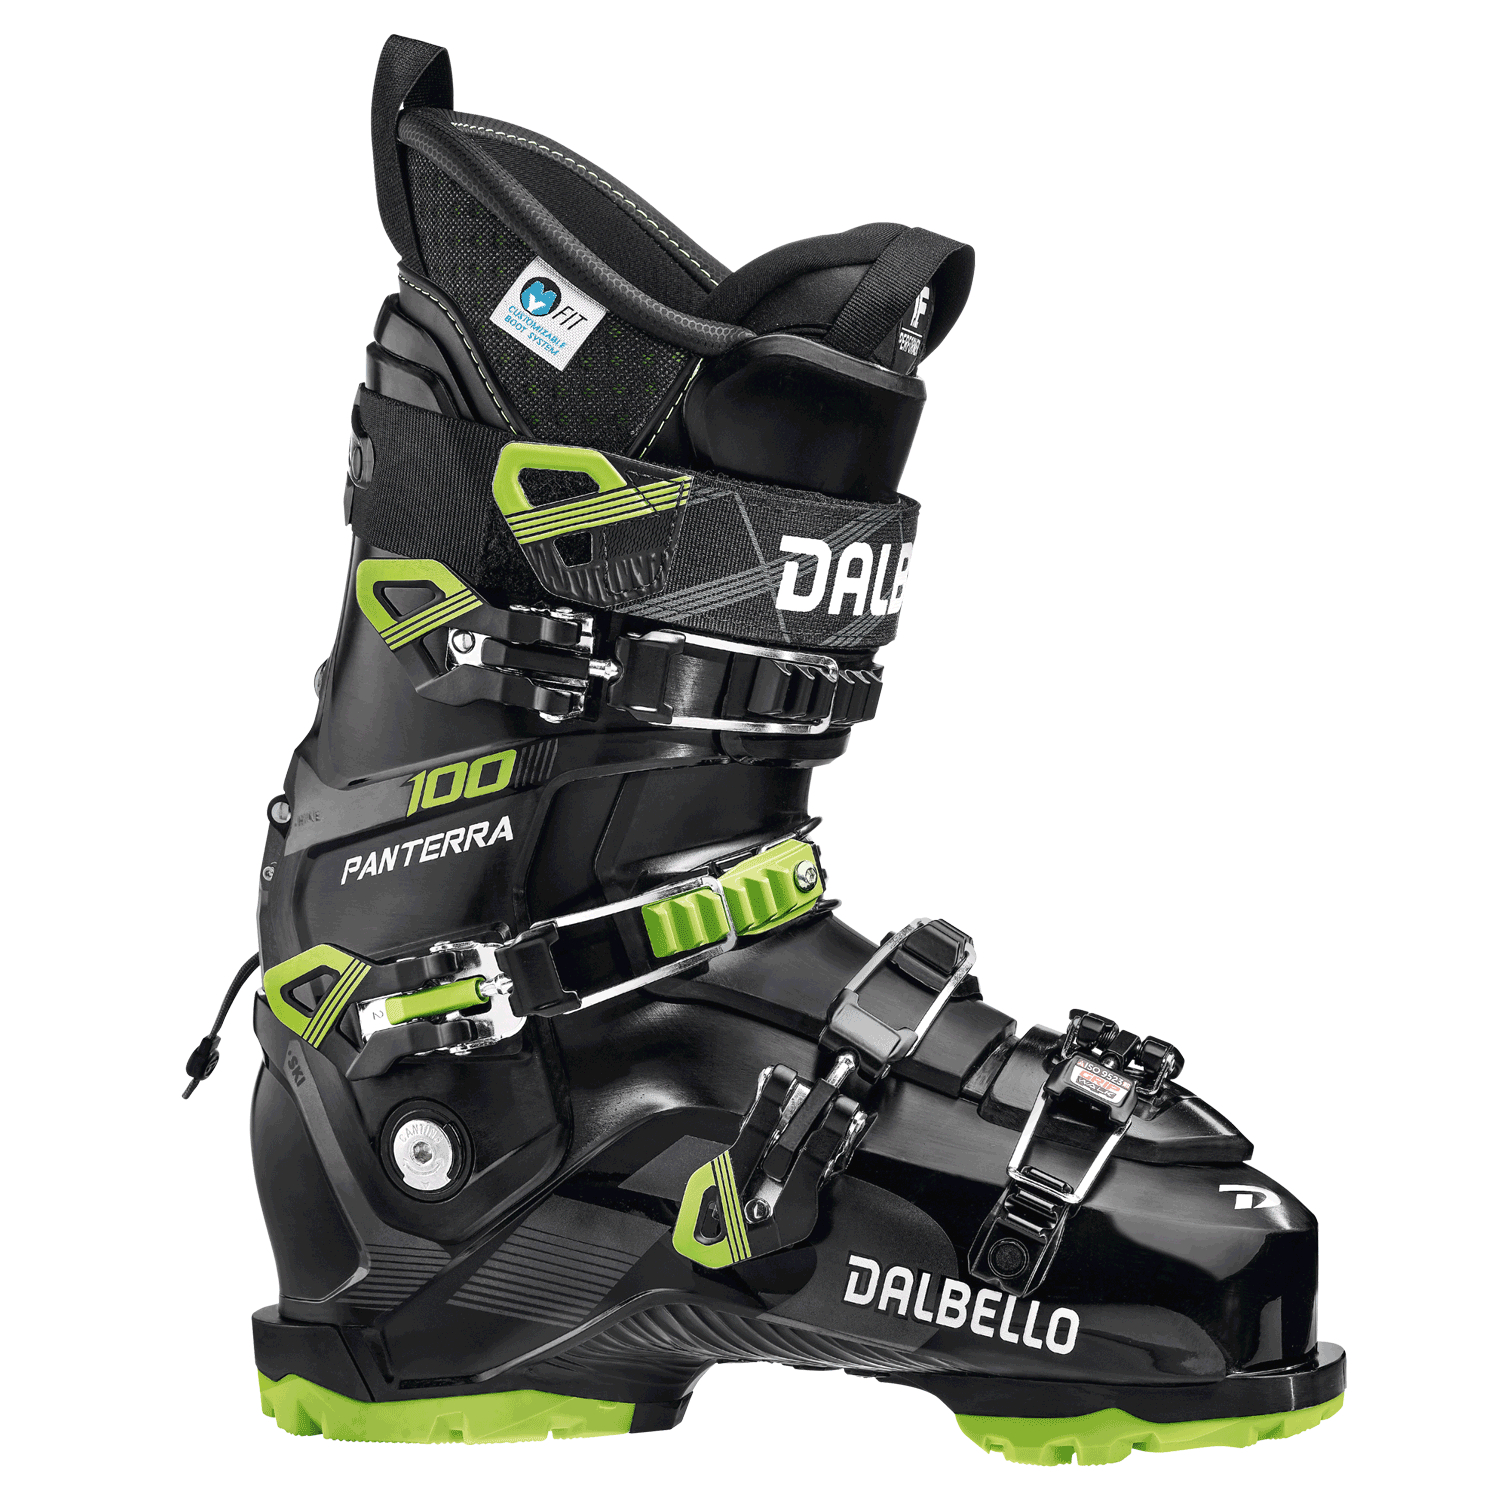 Лыжные ботинки для фрирайда Dalbello Panterra 100 GW Black/Lime (285)